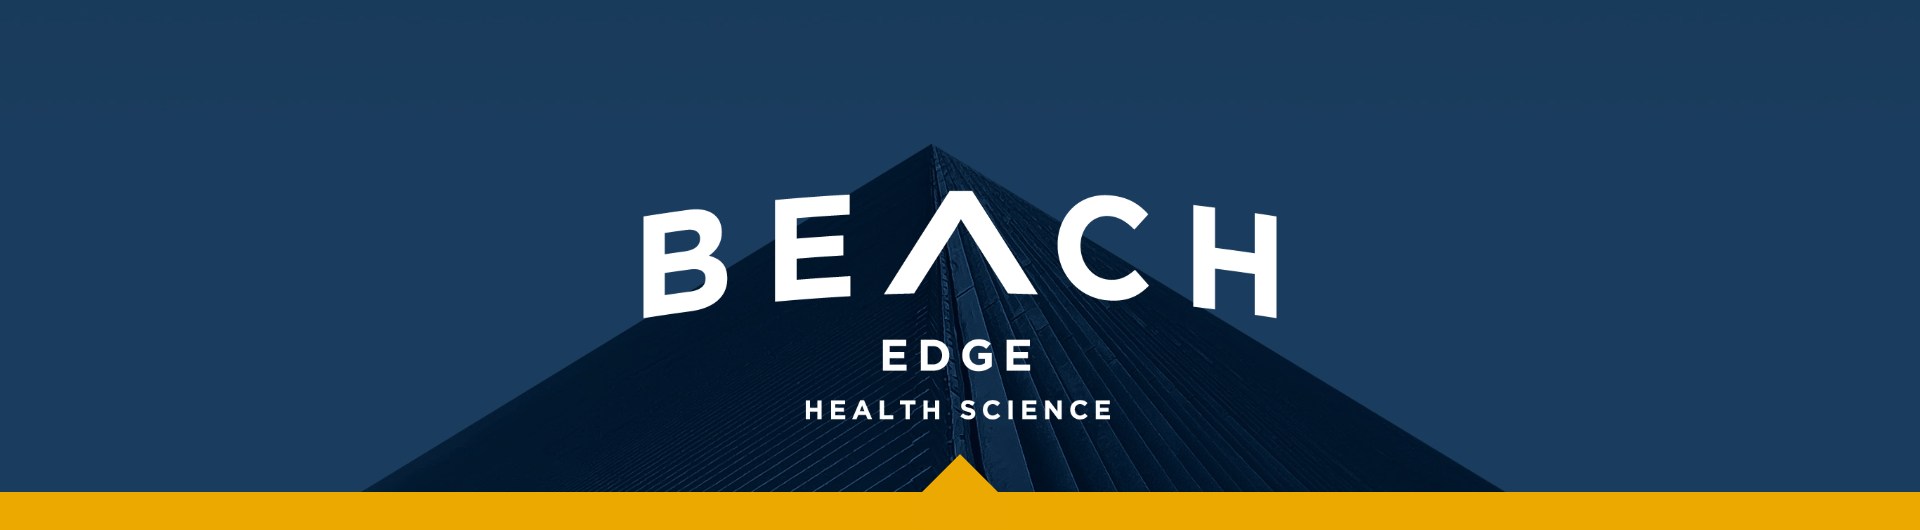 Beach Edge banner